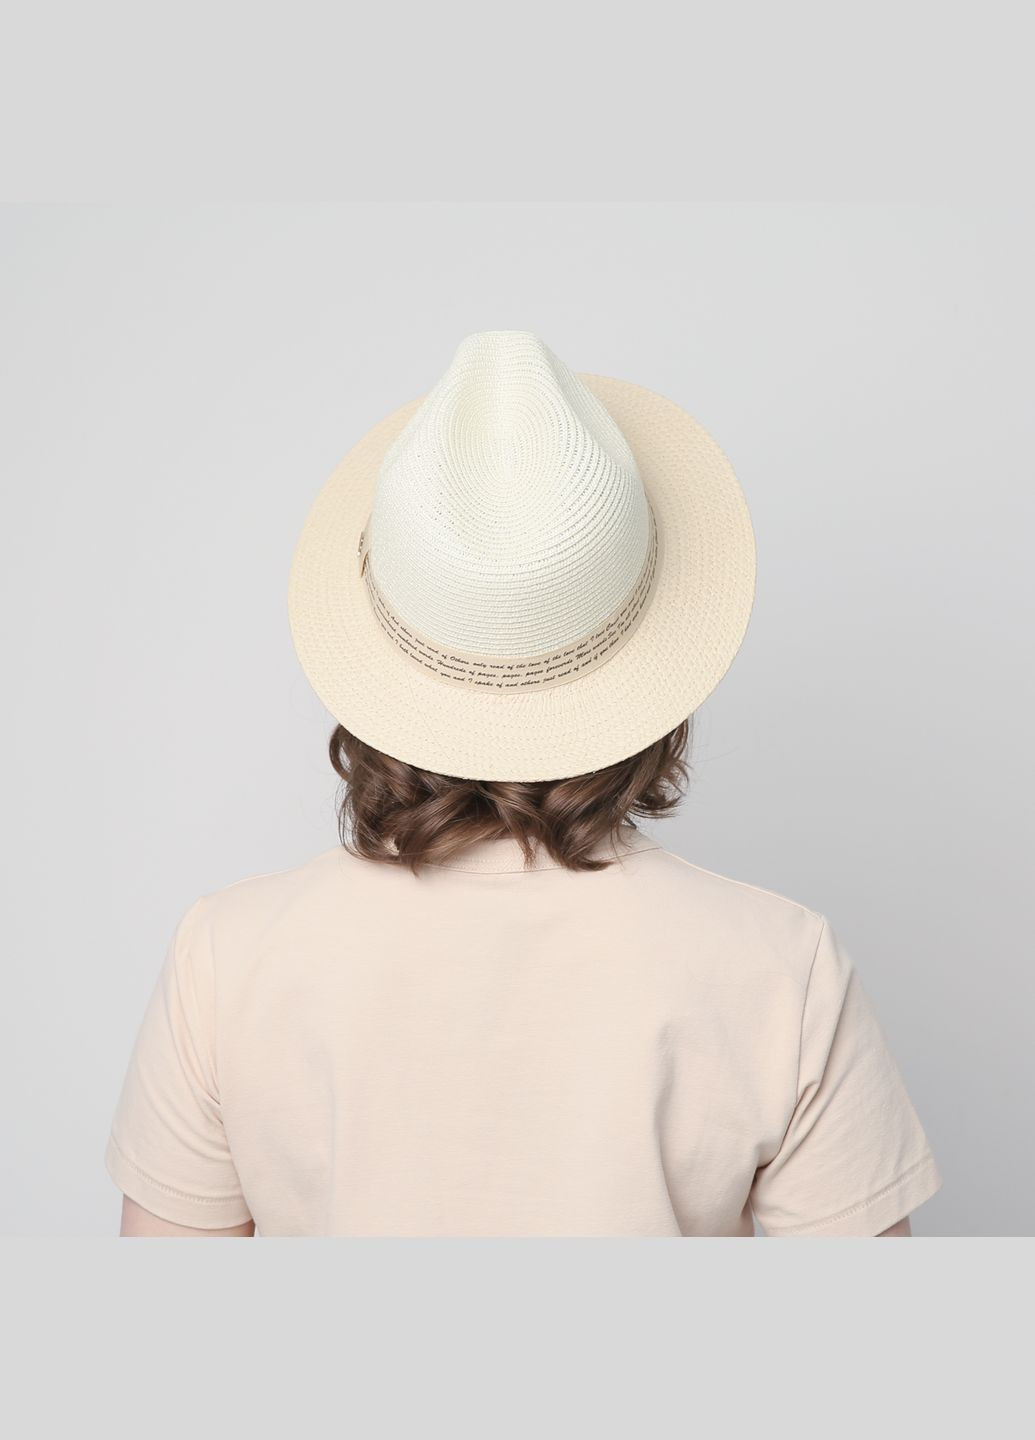 Шляпа федора женская бумага бежевая WENDY LuckyLOOK 817-747 (289478407)